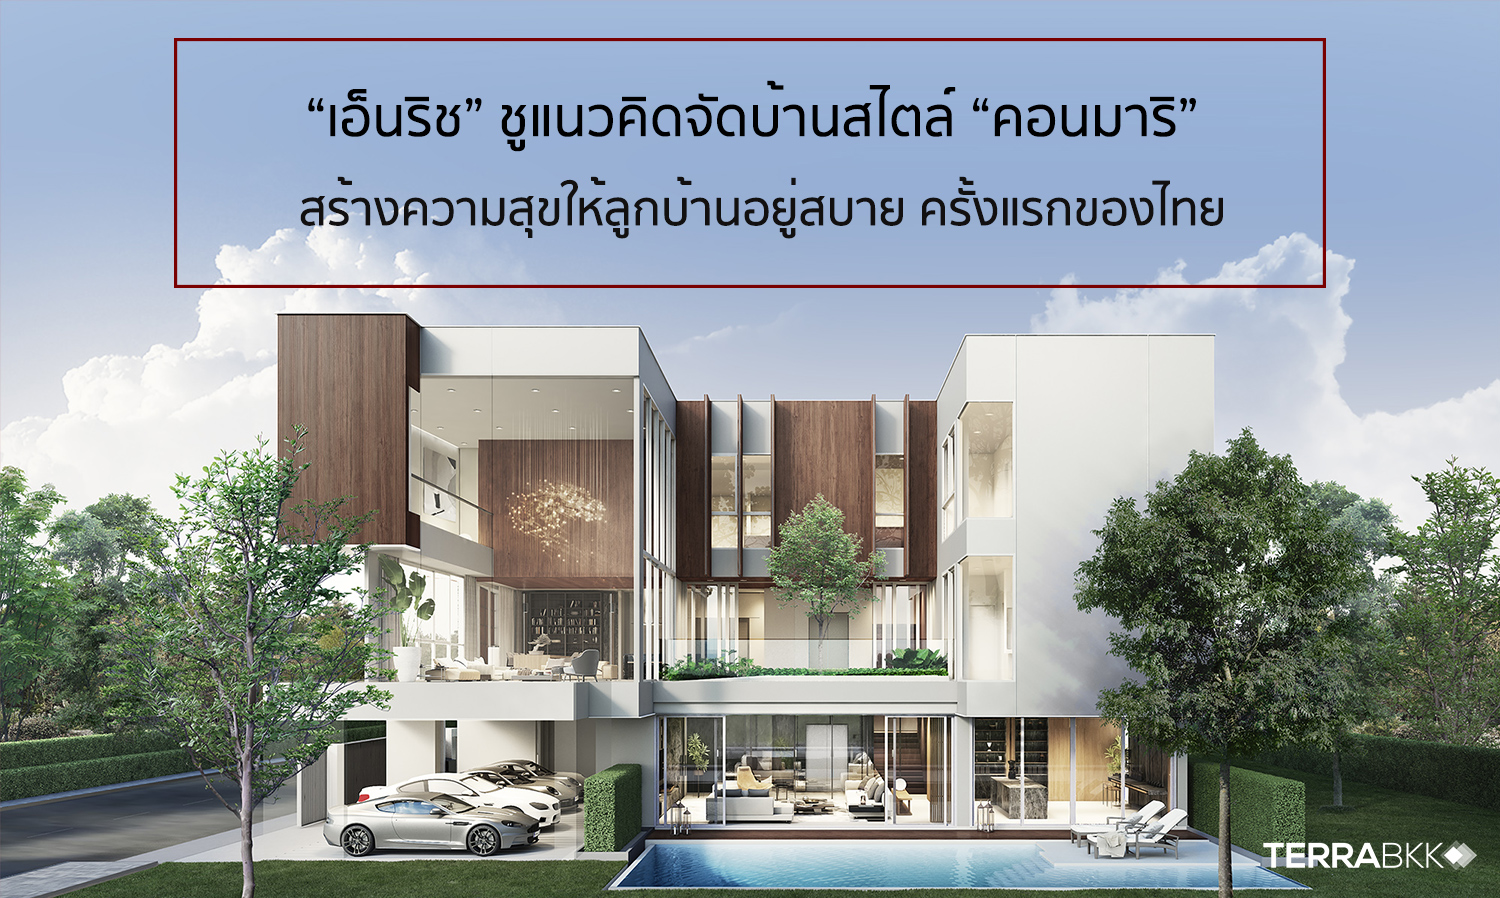  “เอ็นริช” ชูแนวคิดจัดบ้านสไตล์ “คอนมาริ” สร้างความสุขให้ลูกบ้านอยู่สบาย ครั้งแรกของไทย